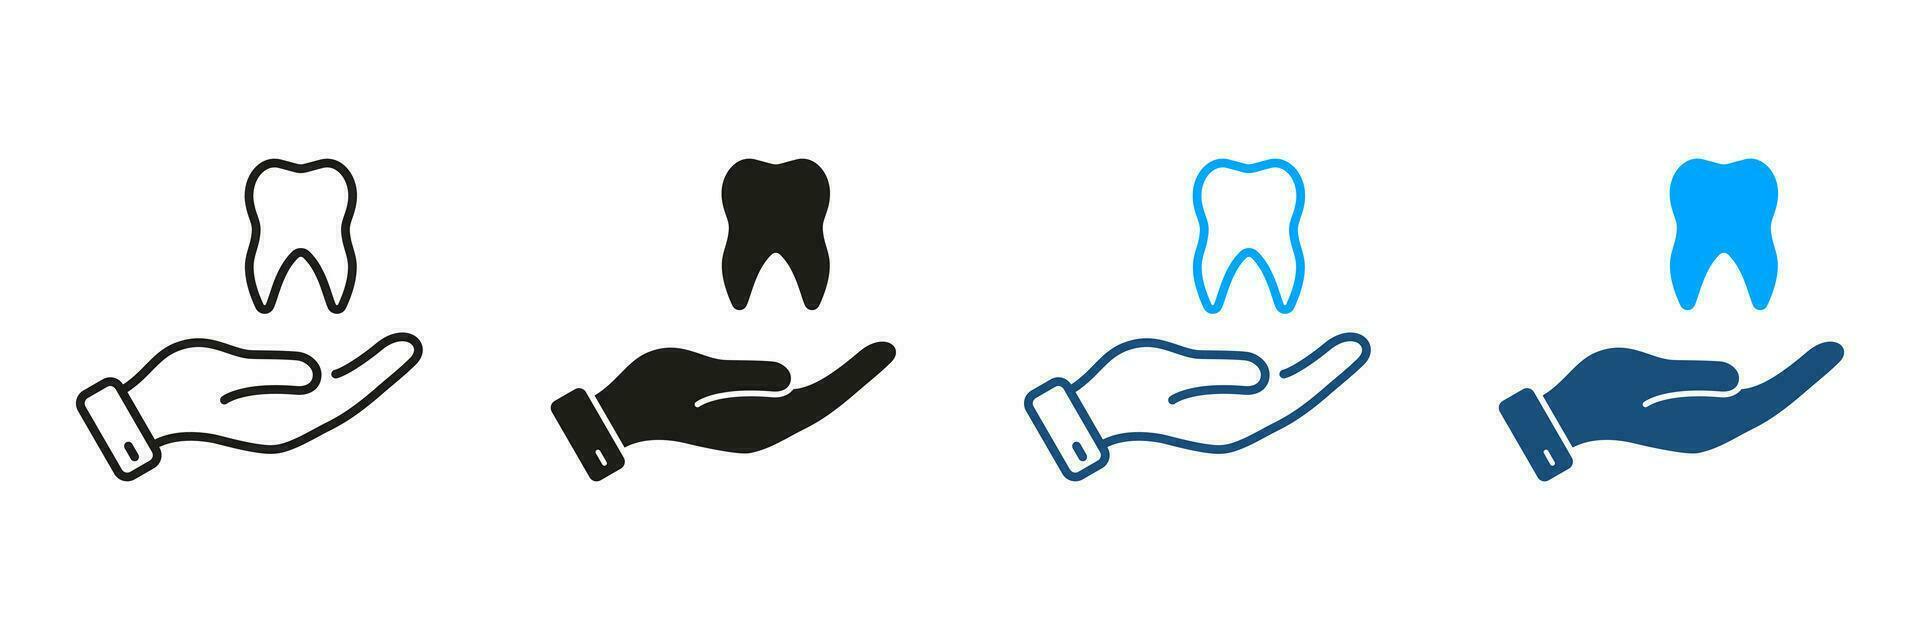 dental behandling, stomatologi skydd piktogram. tand och mänsklig hand. dental vård silhuett och linje ikoner uppsättning. tandvård, tandläkare Stöd symbol samling. isolerat vektor illustration.